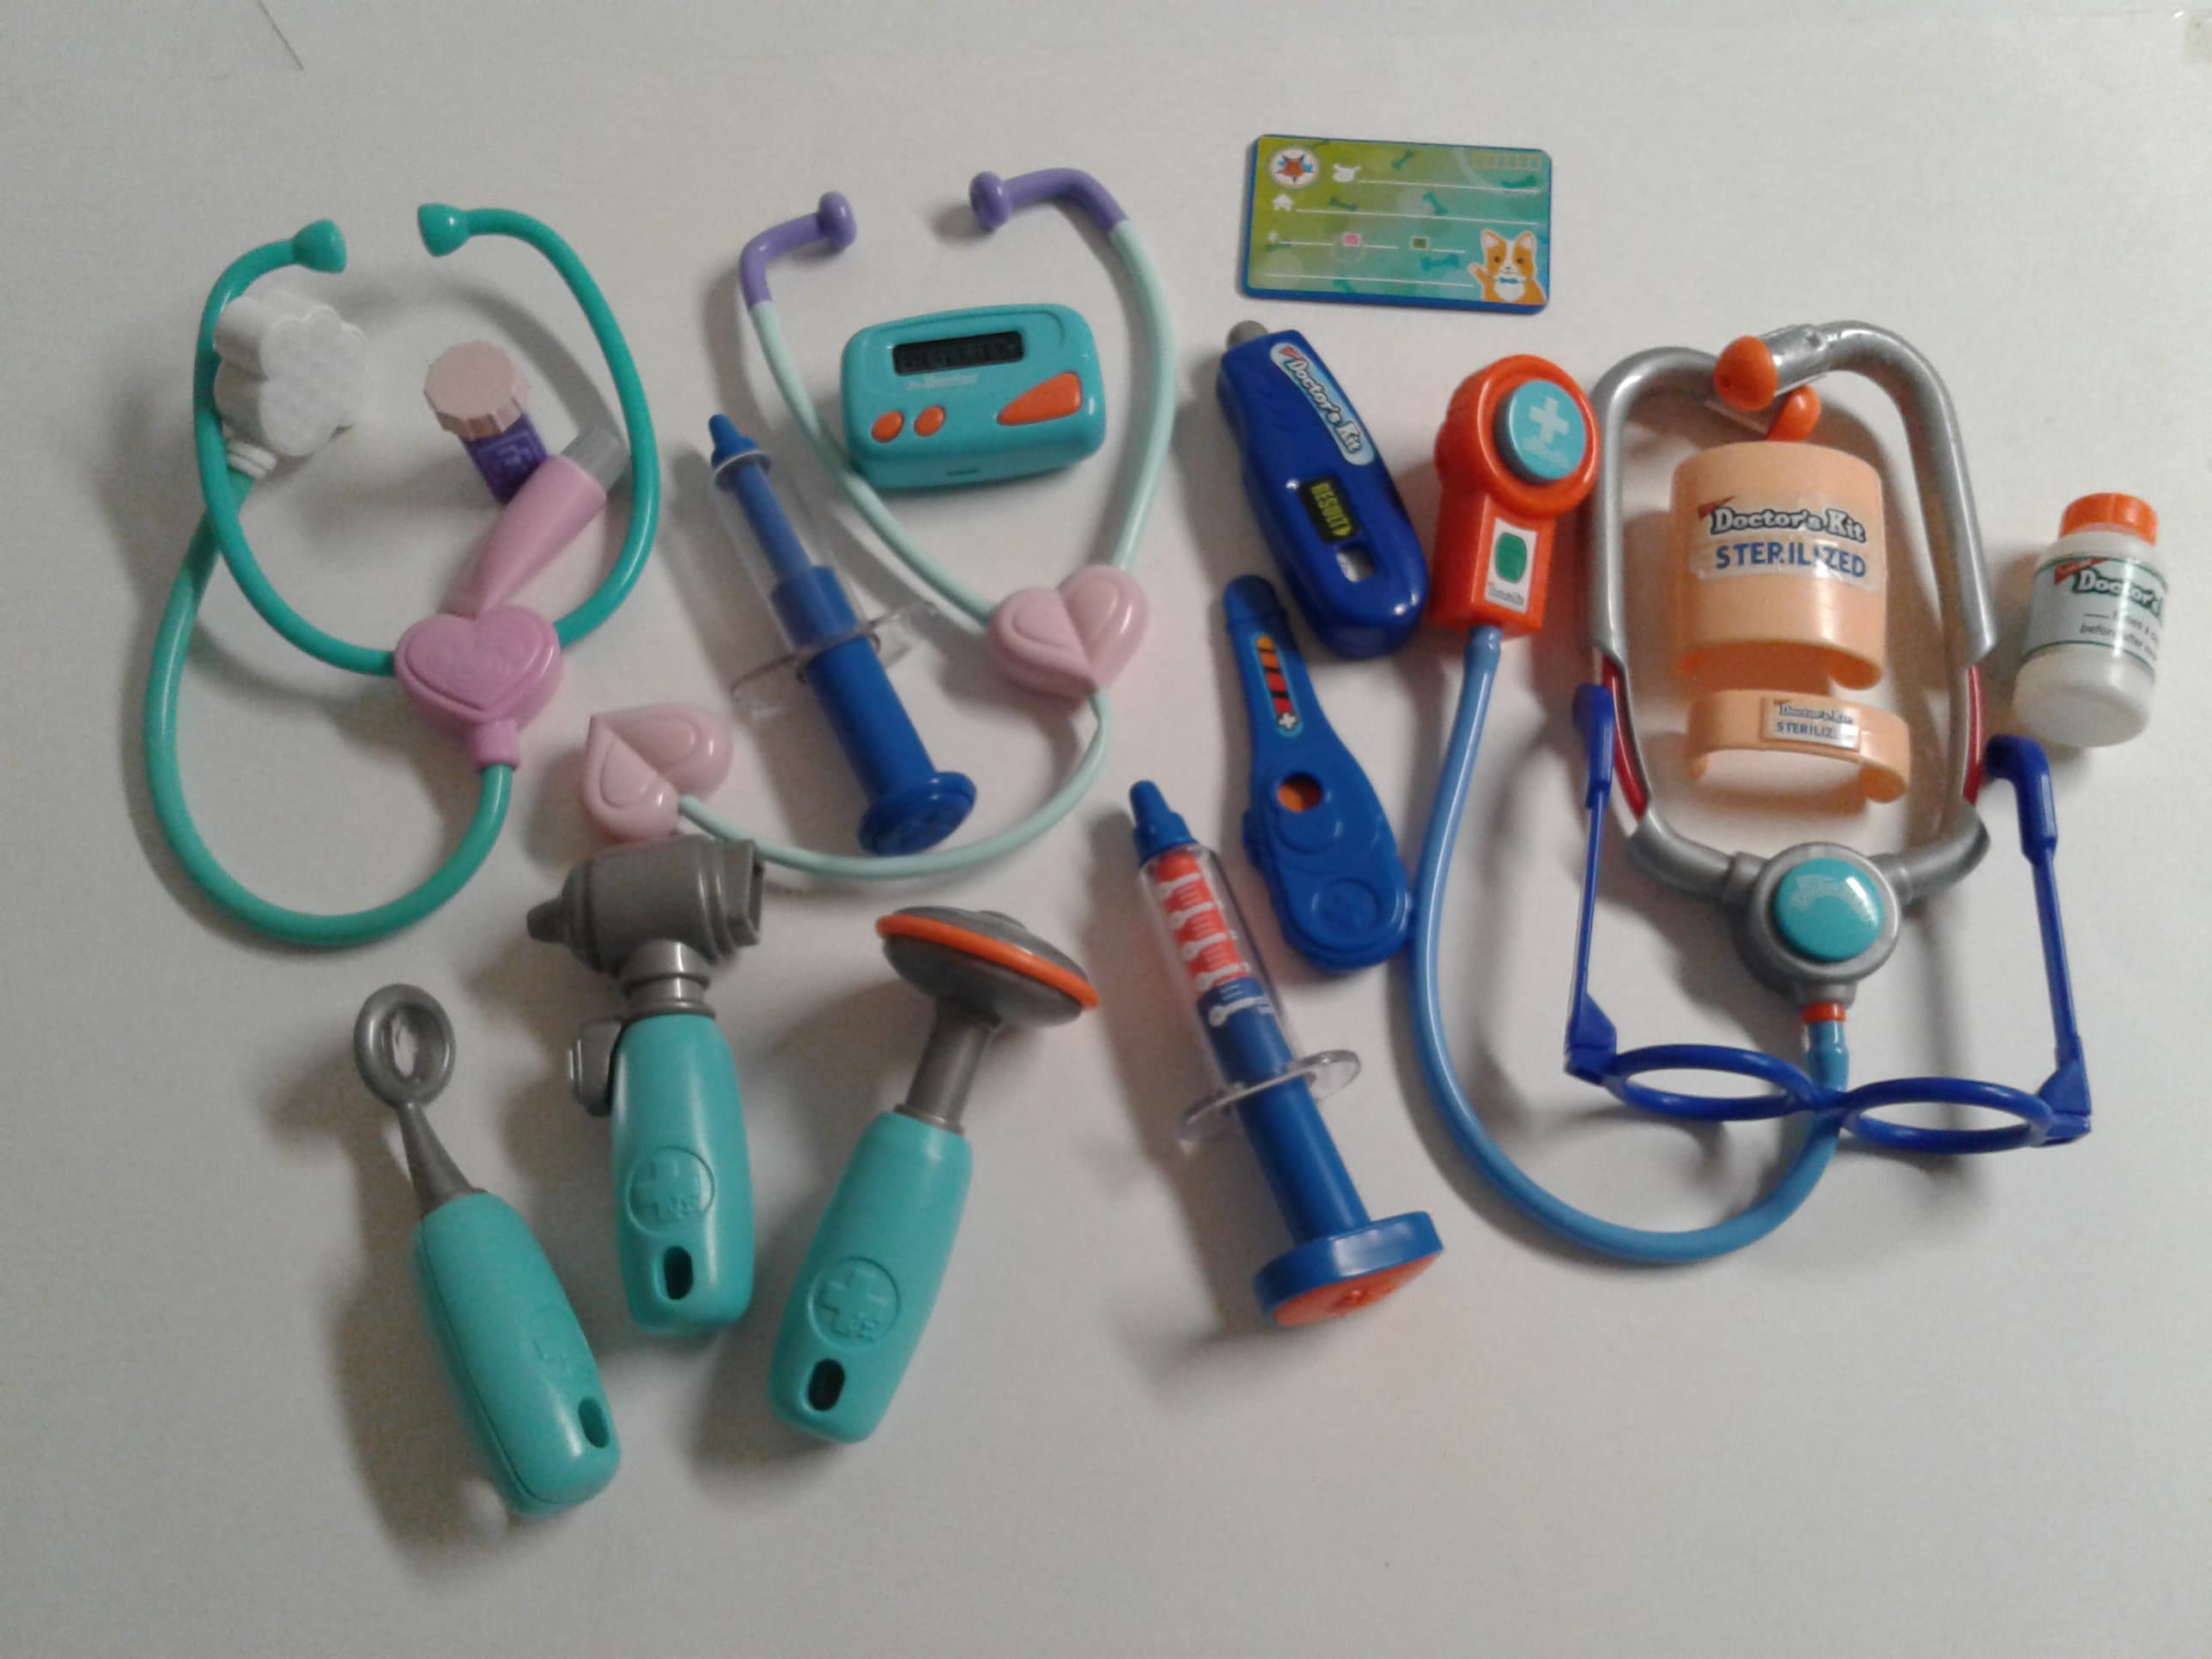 Used Medical Equipment for Children